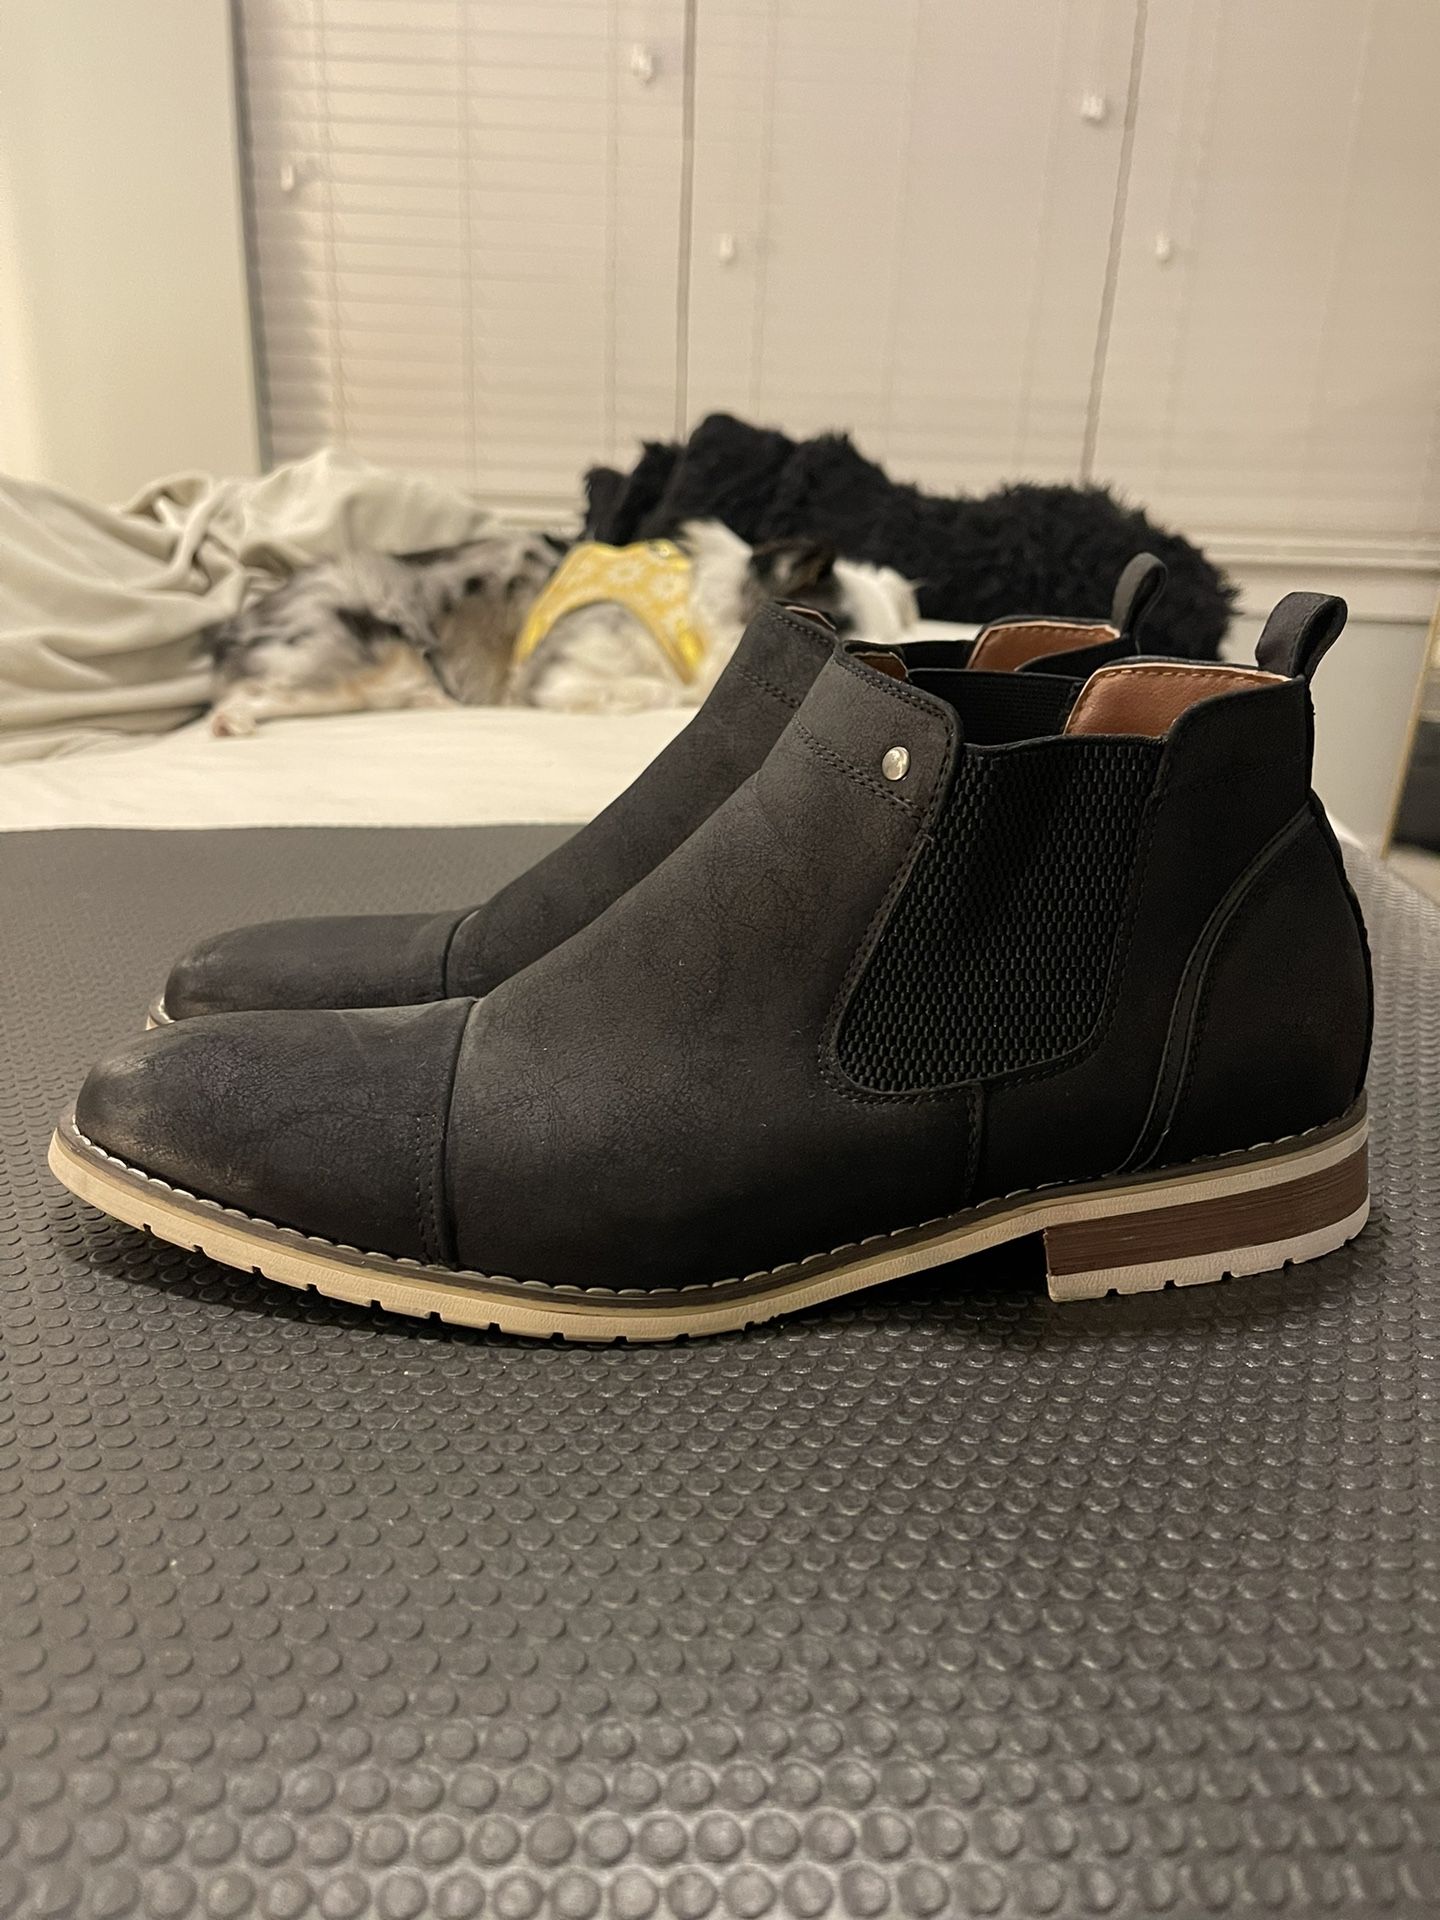 Men’s Black Chelsea Boots Size 9.5